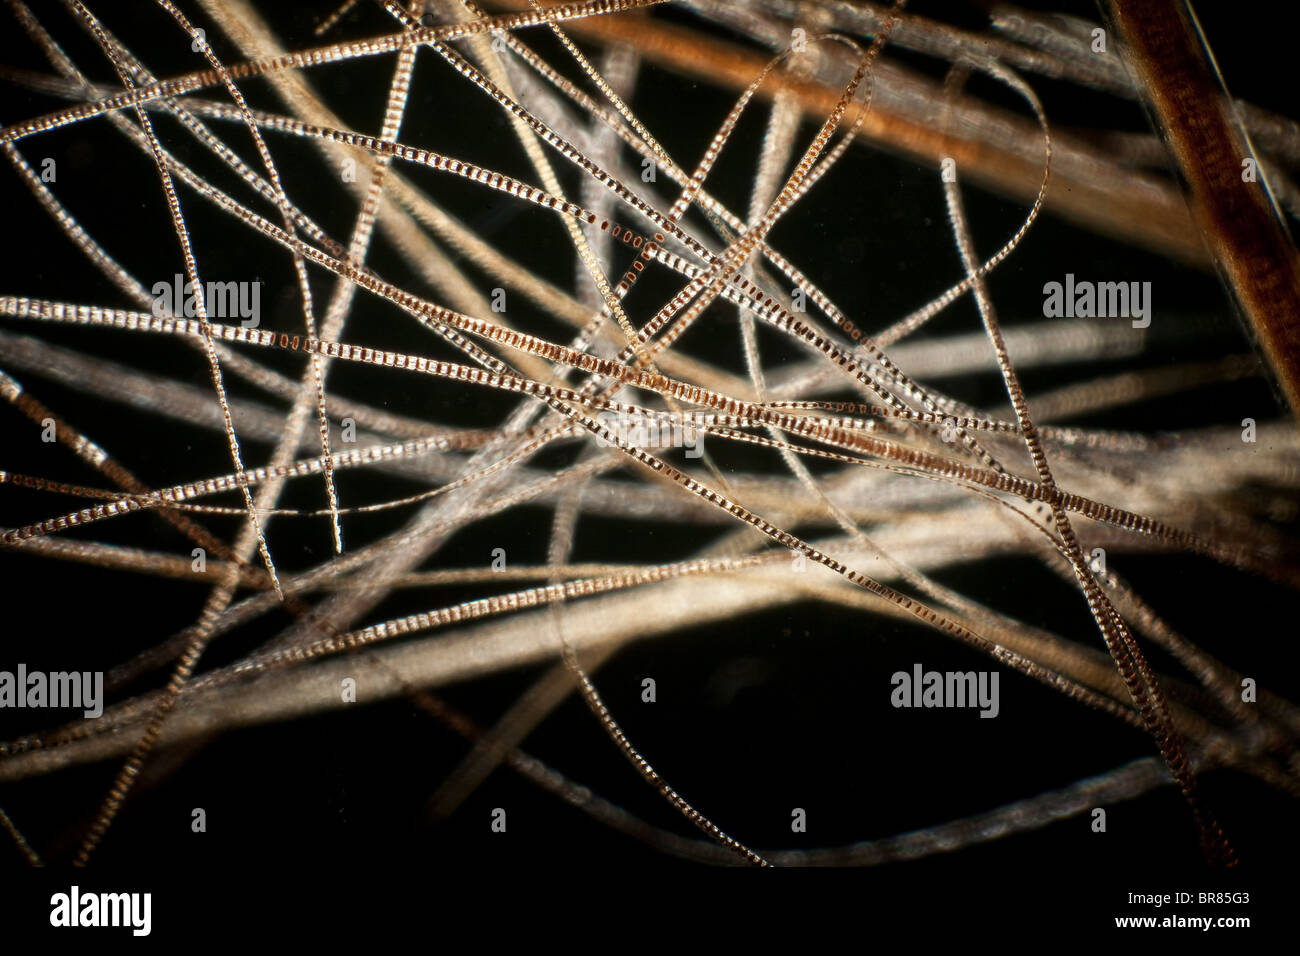 Darkfield photomicrographie, poils de souris domestique (Mus musculus) Banque D'Images